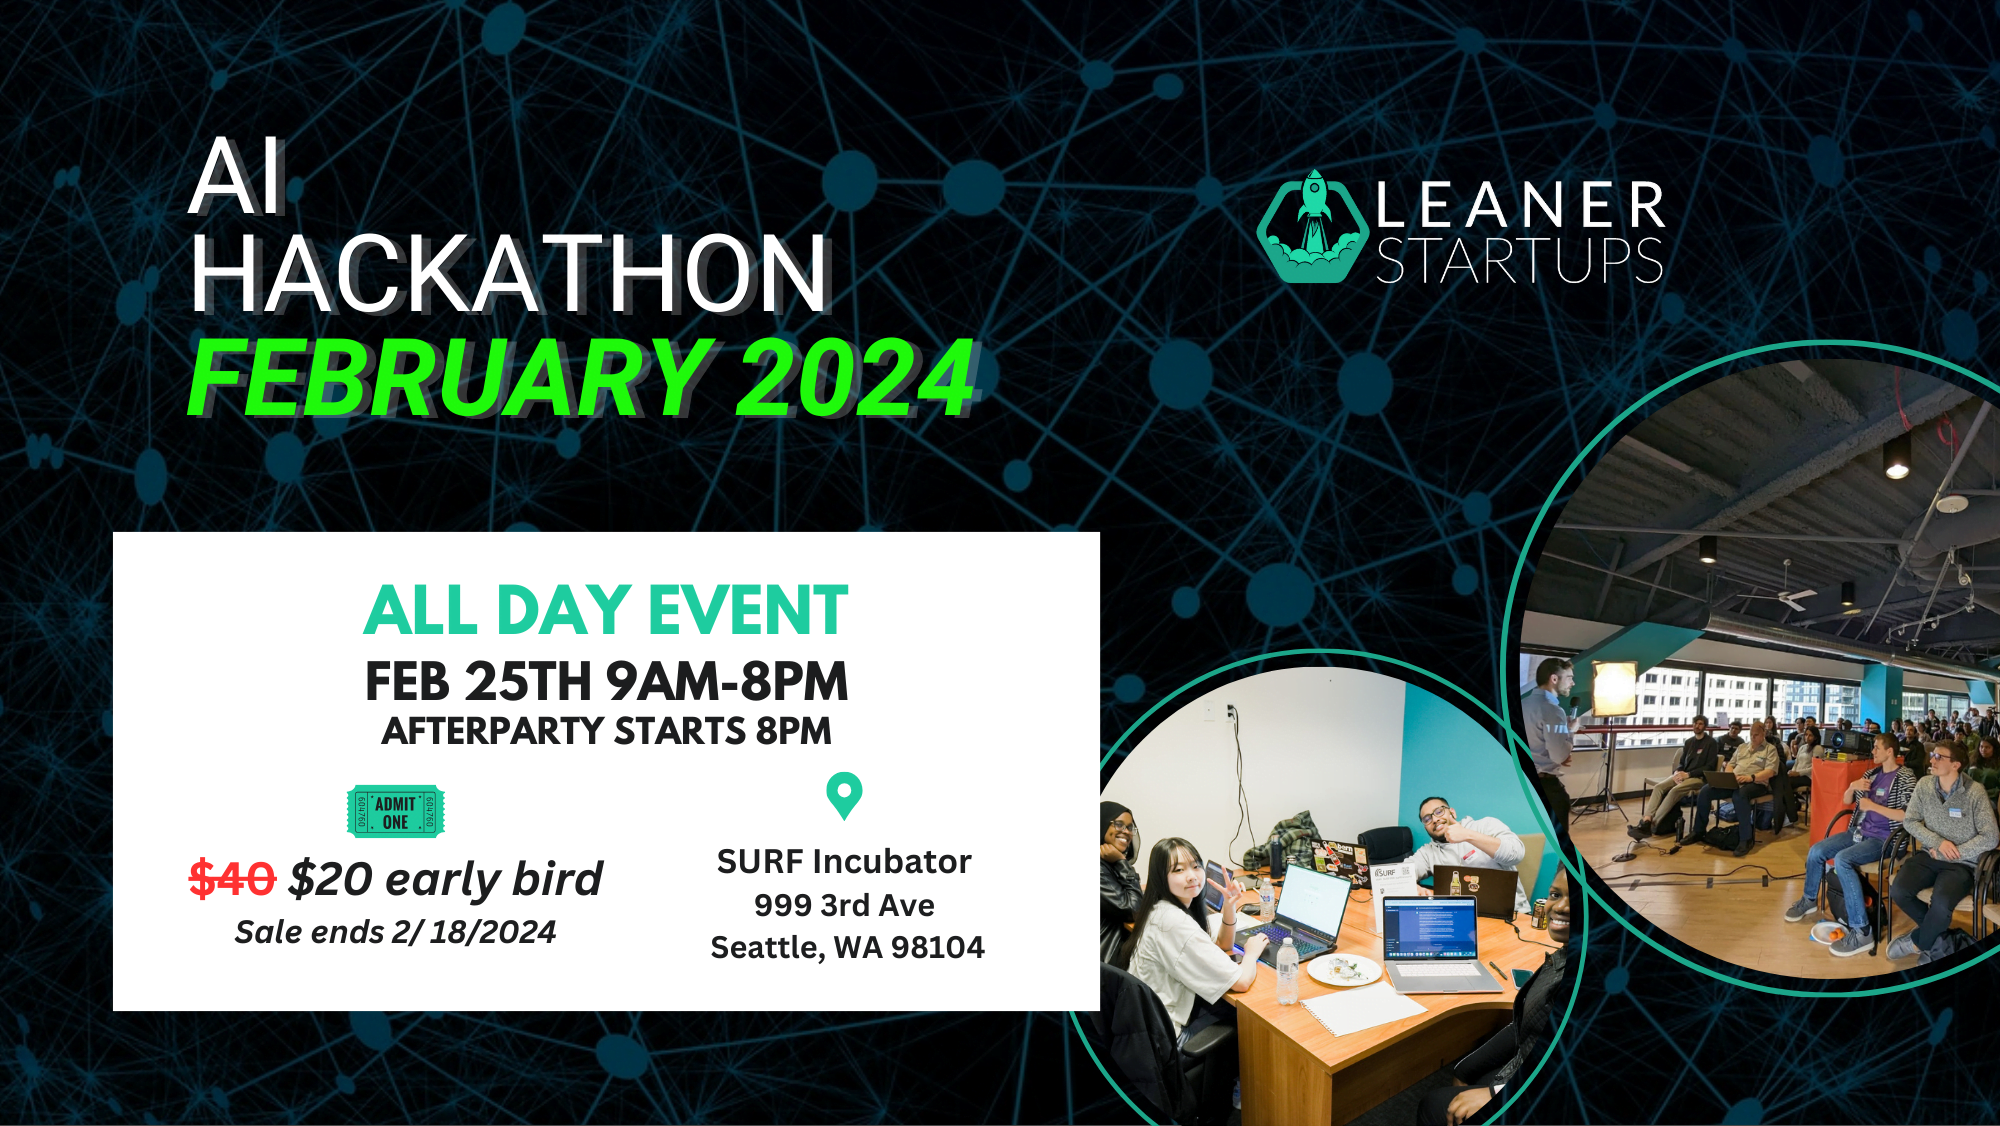 AI Hackathon event image February 2024